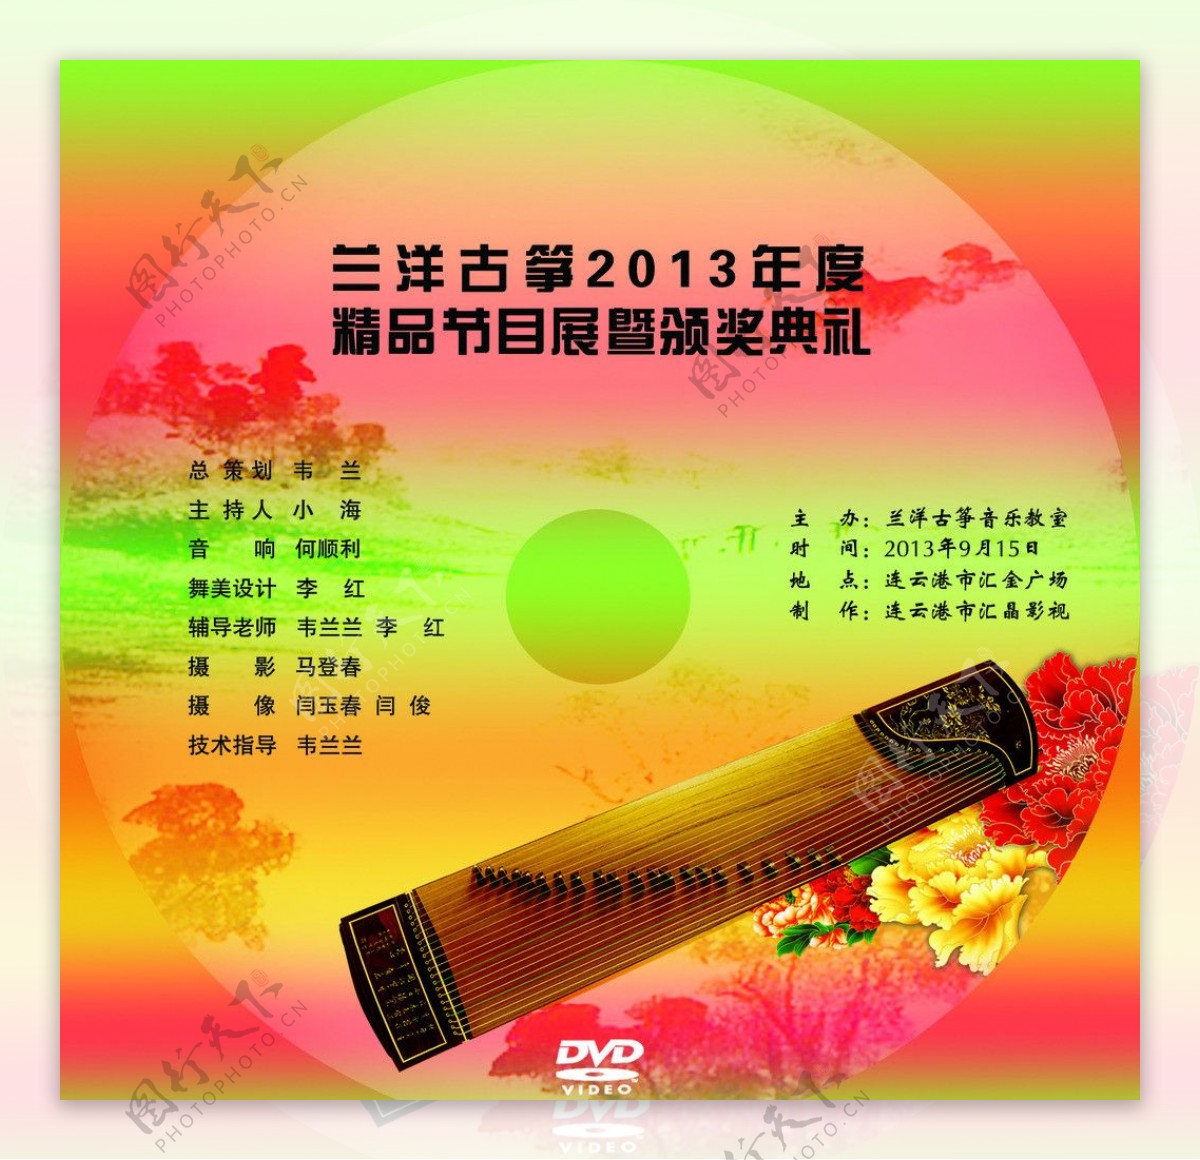 古筝颁奖典礼CD封面图片